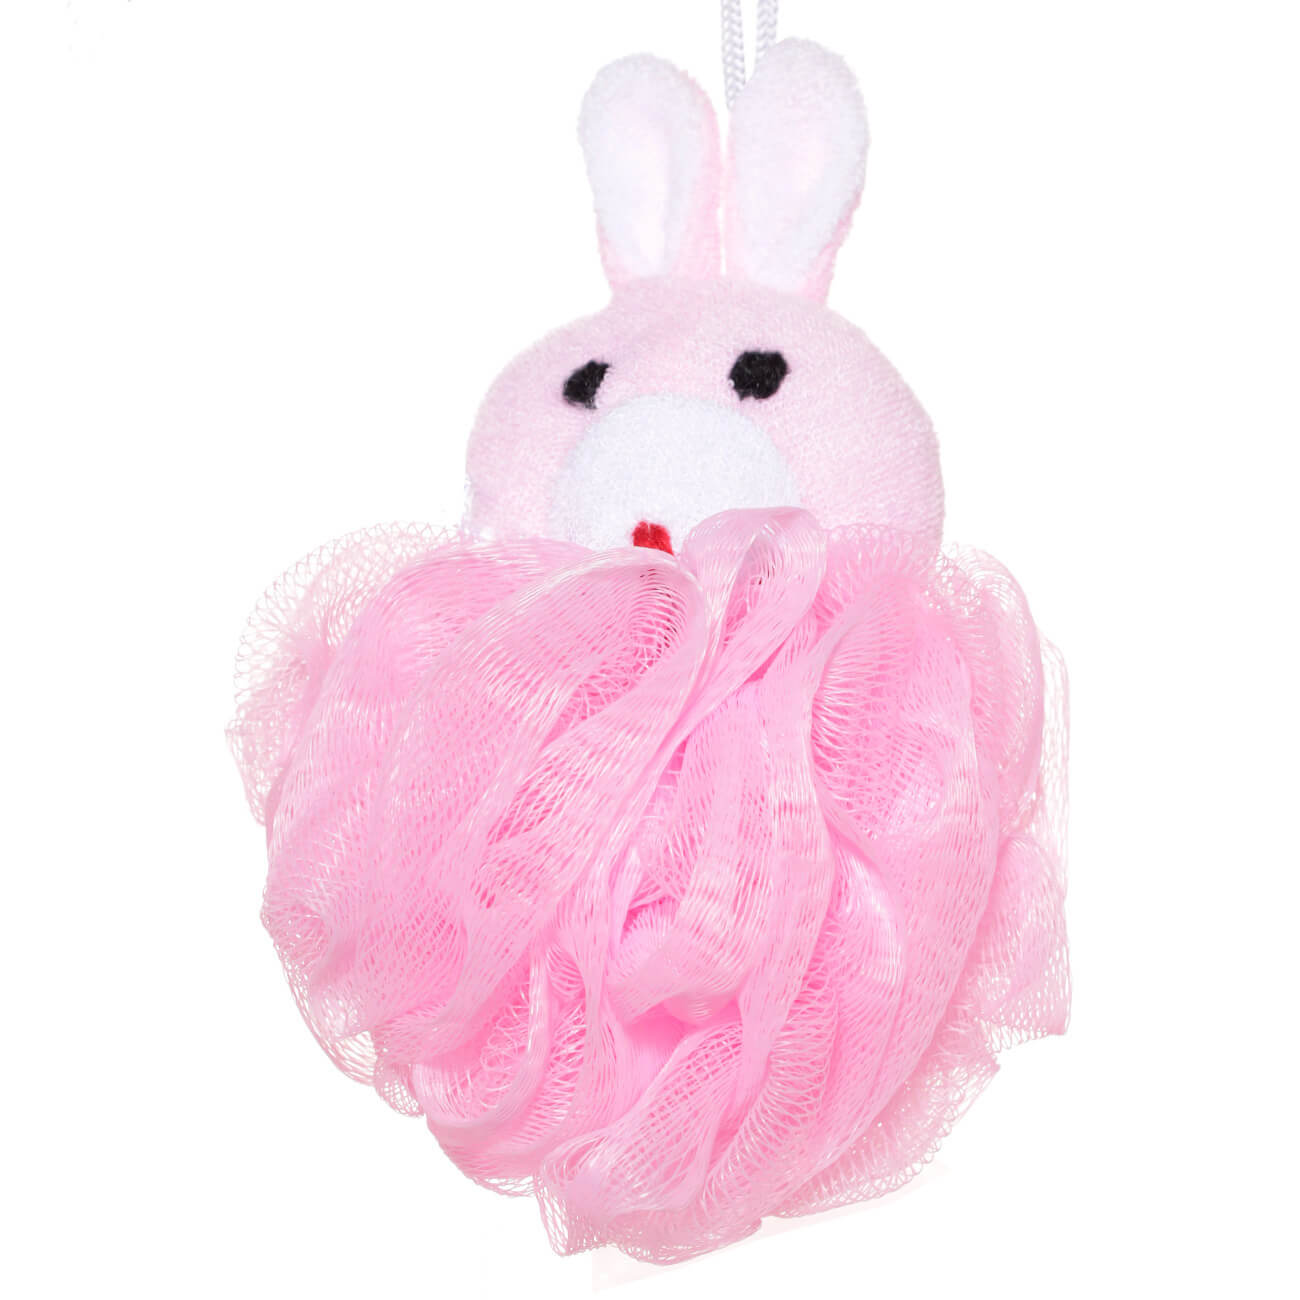 Мочалка для мытья тела, 12 см, детская, полиэтилен/полиэстер, розовая, Заяц, Rabbit мочалка детская для тела